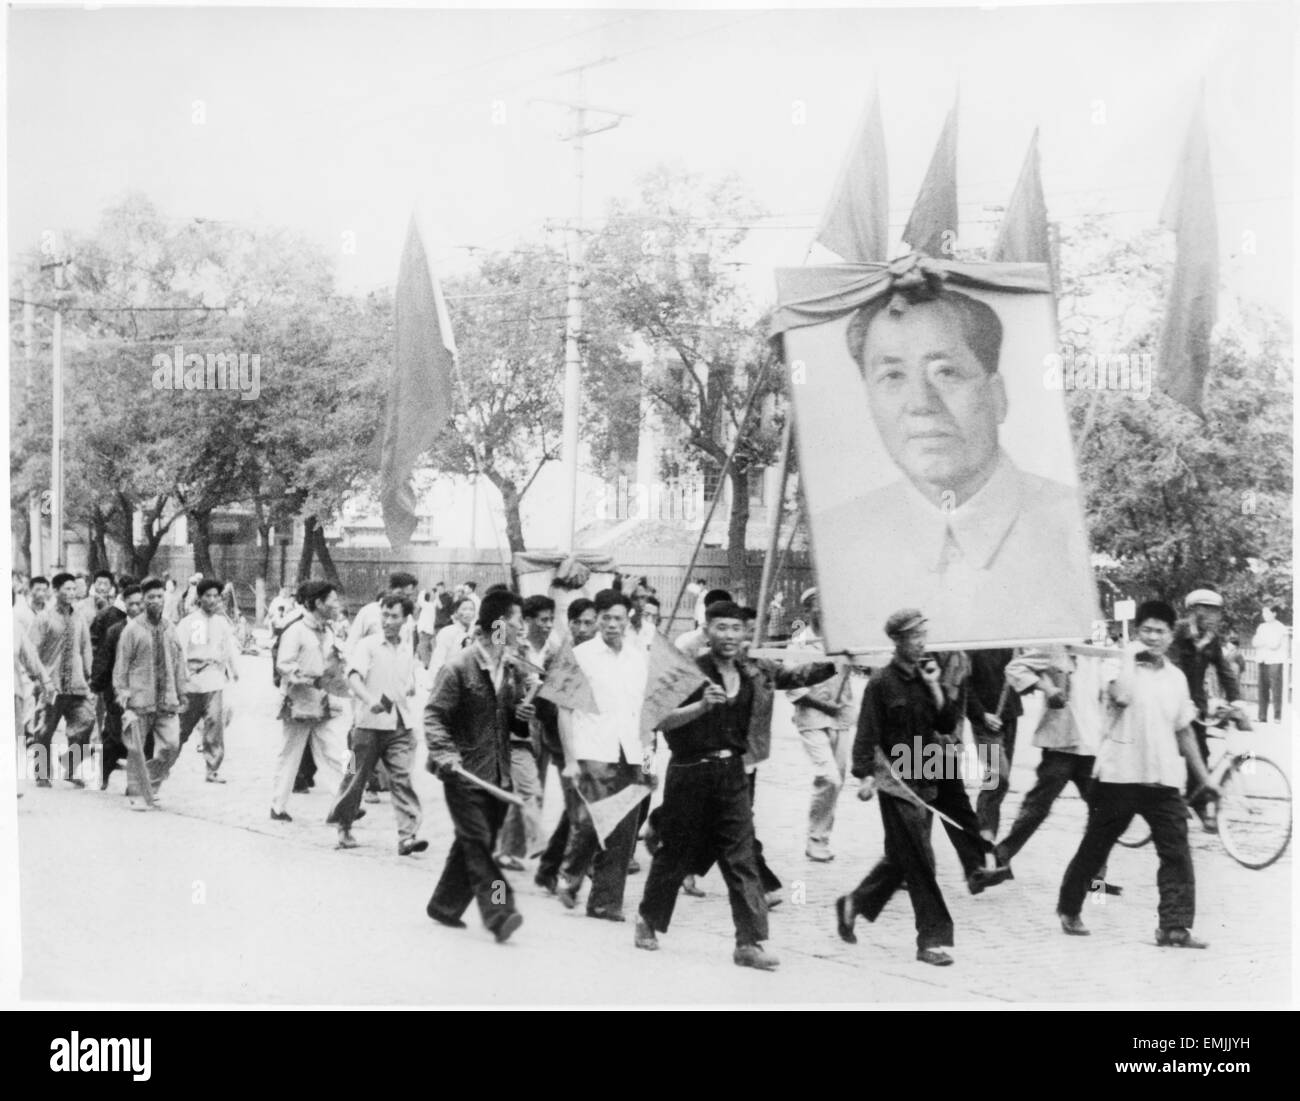 La célébration de démonstration Grande Révolution culturelle prolétarienne avec portrait de Mao Zedong et des Drapeaux Rouges", un film documentaire intitulé "Rapport de la Chine", 1973 Banque D'Images